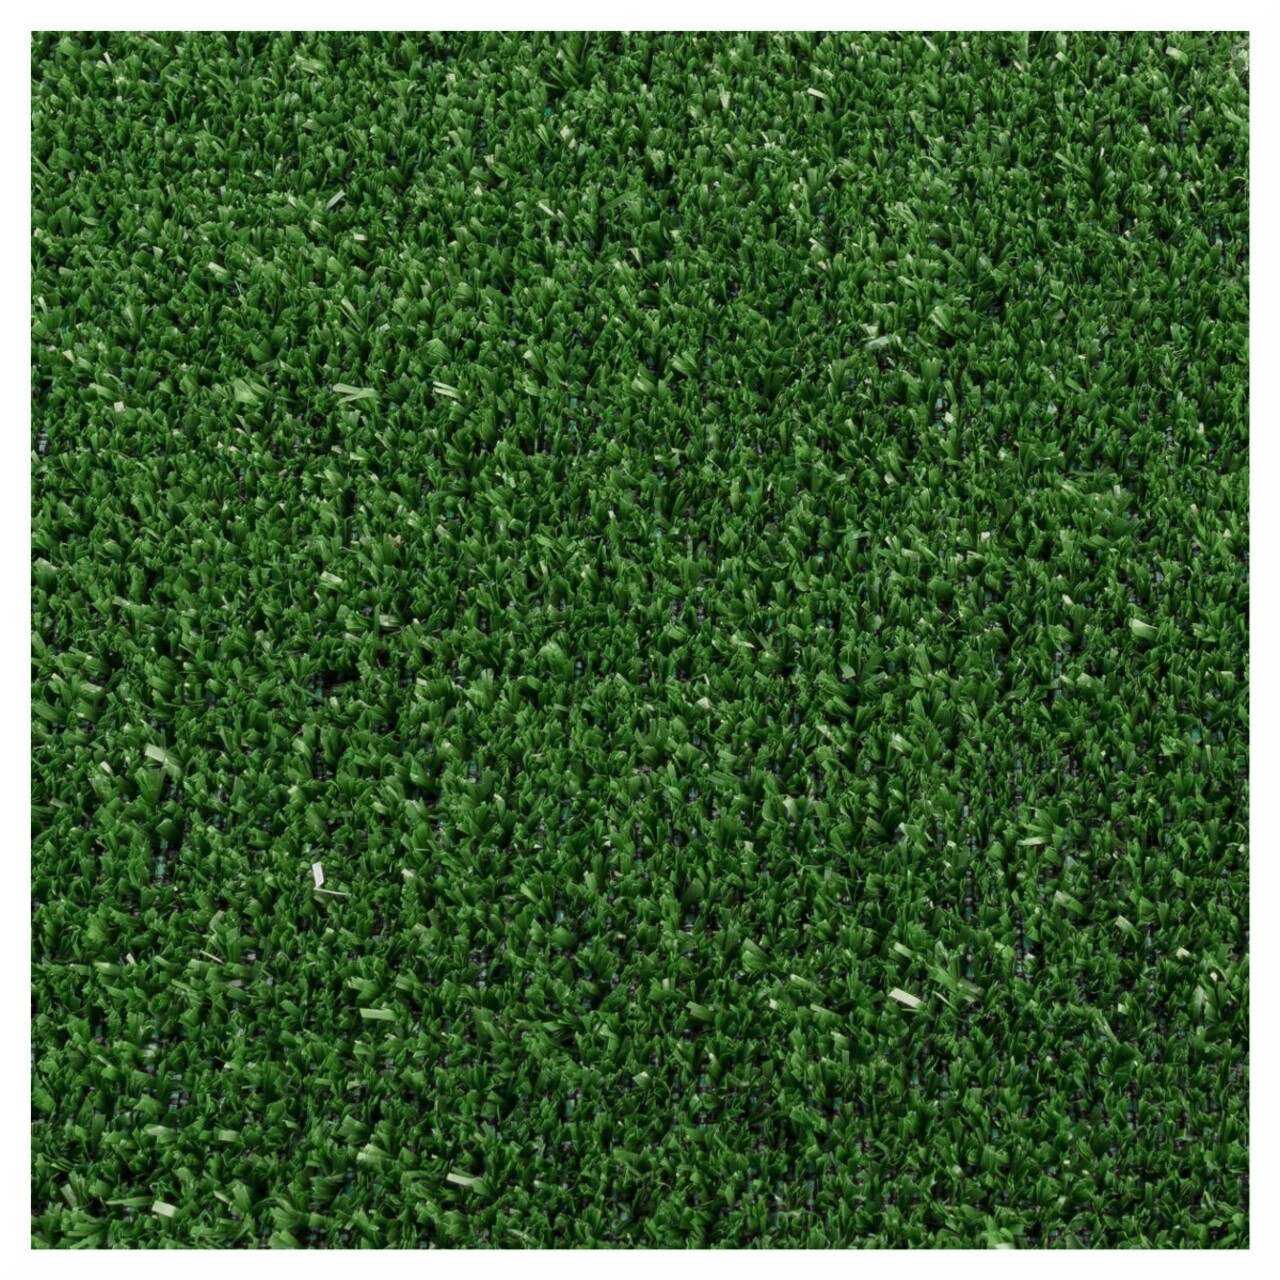 Gazon Artificial Evergreen 5 Mm, Decorino, 133x400 Cm, Polipropilena, Verde